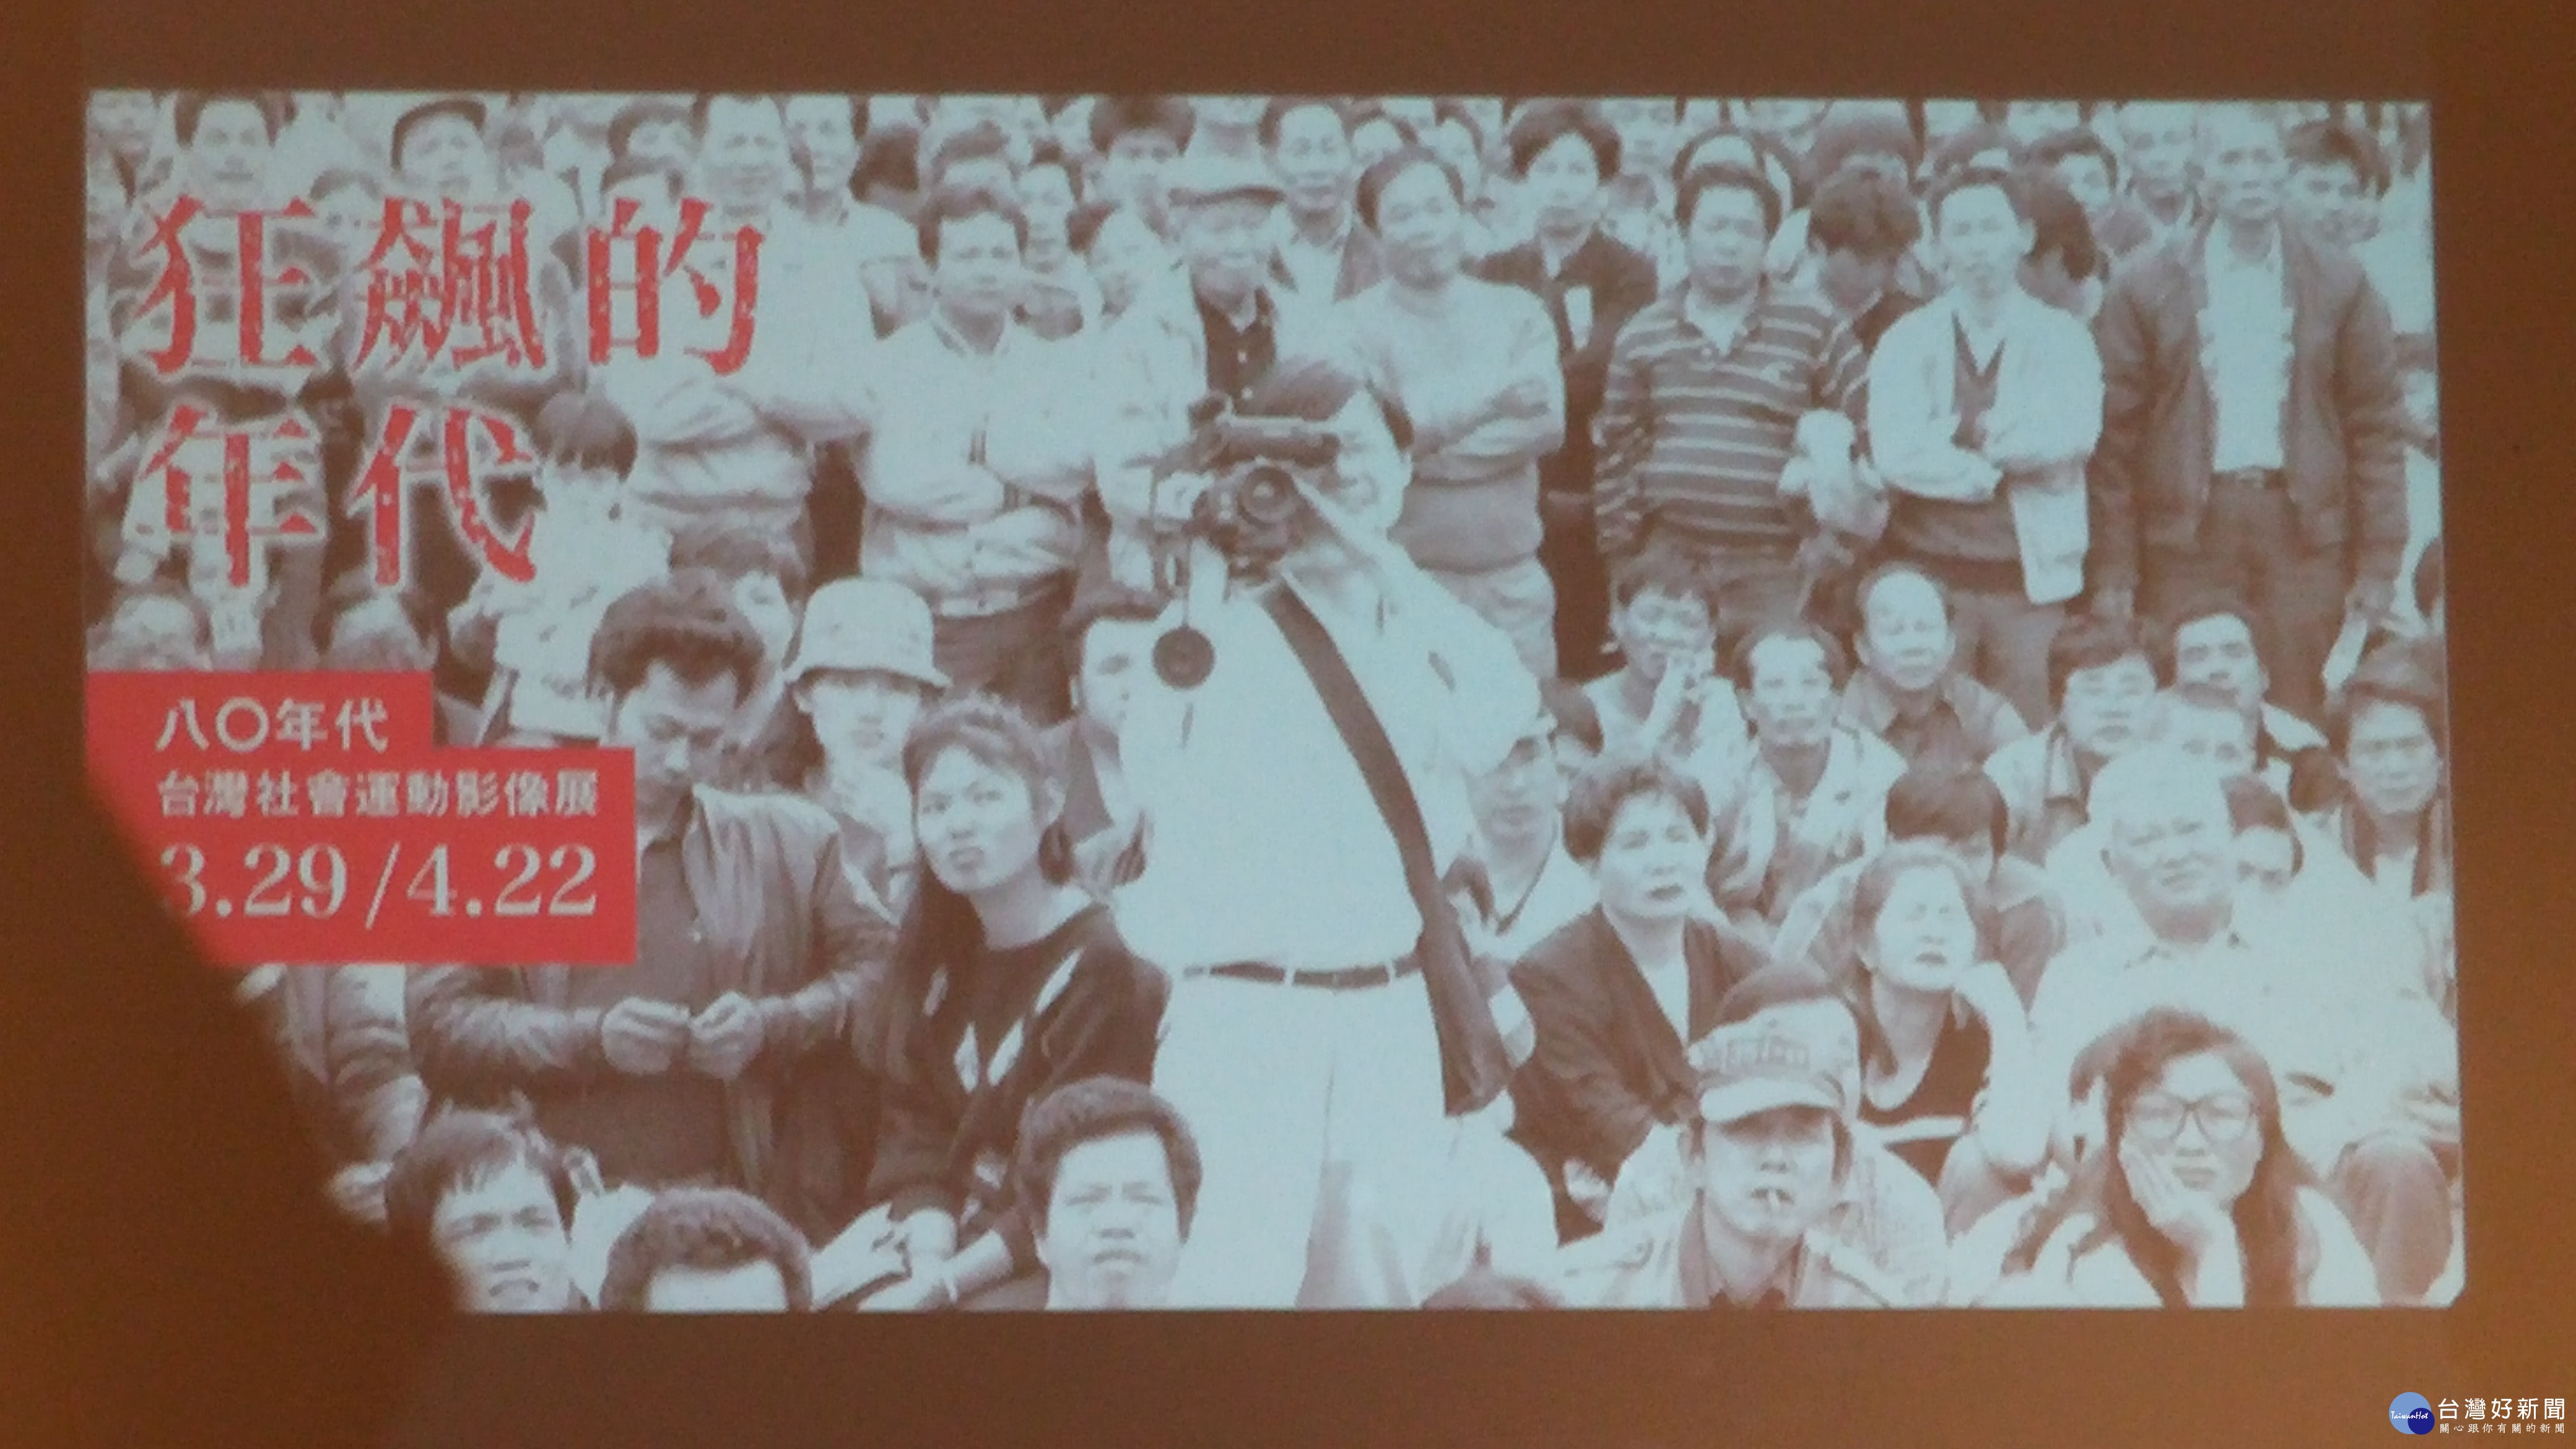 狂飆的年代：80年代台灣社會運動影像展